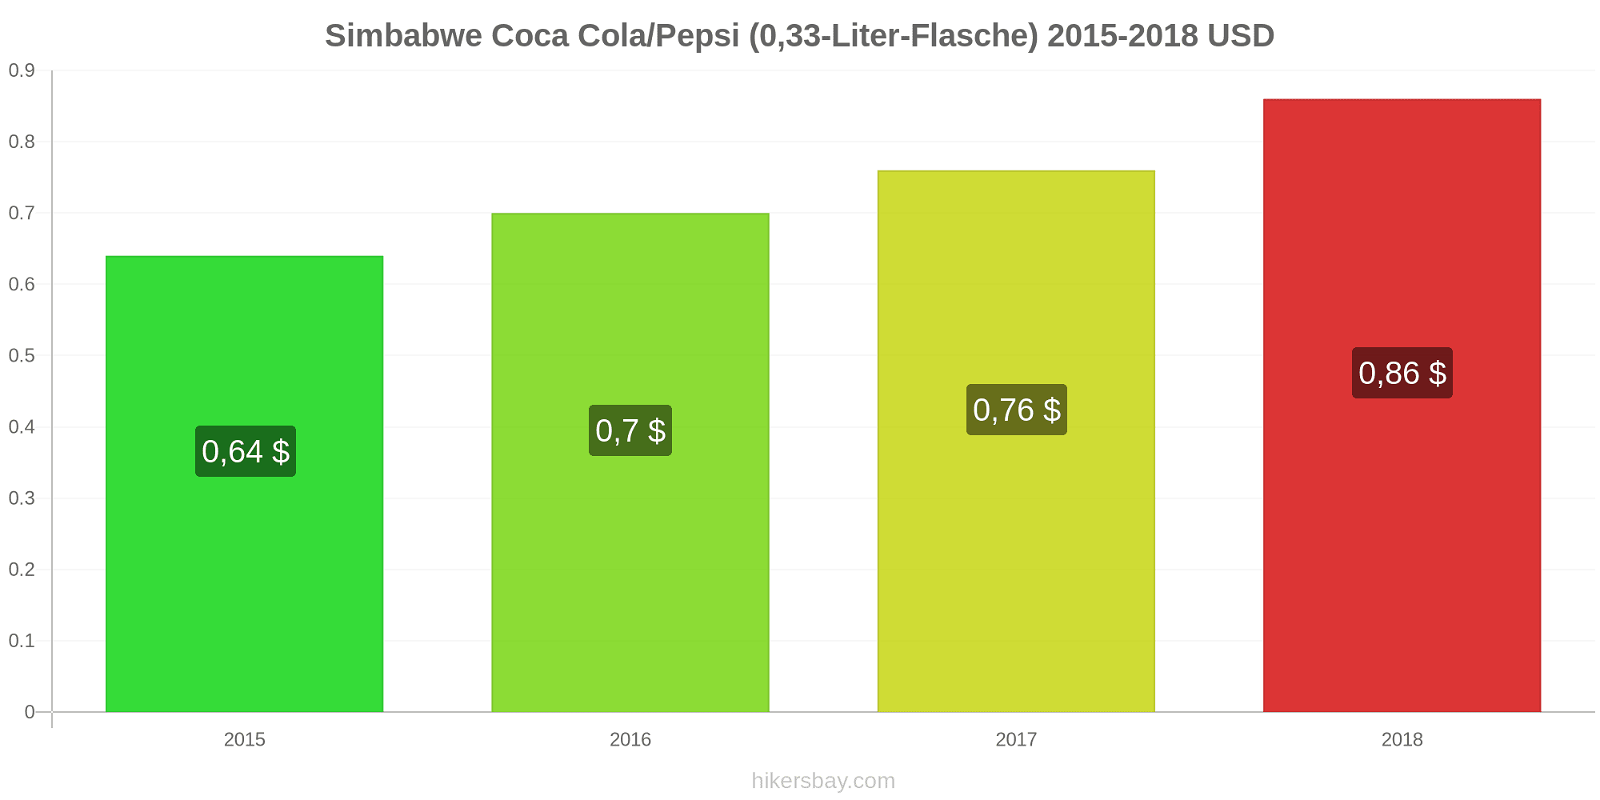 Simbabwe Preisänderungen Coke/Pepsi (0,33-Liter-Flasche) hikersbay.com